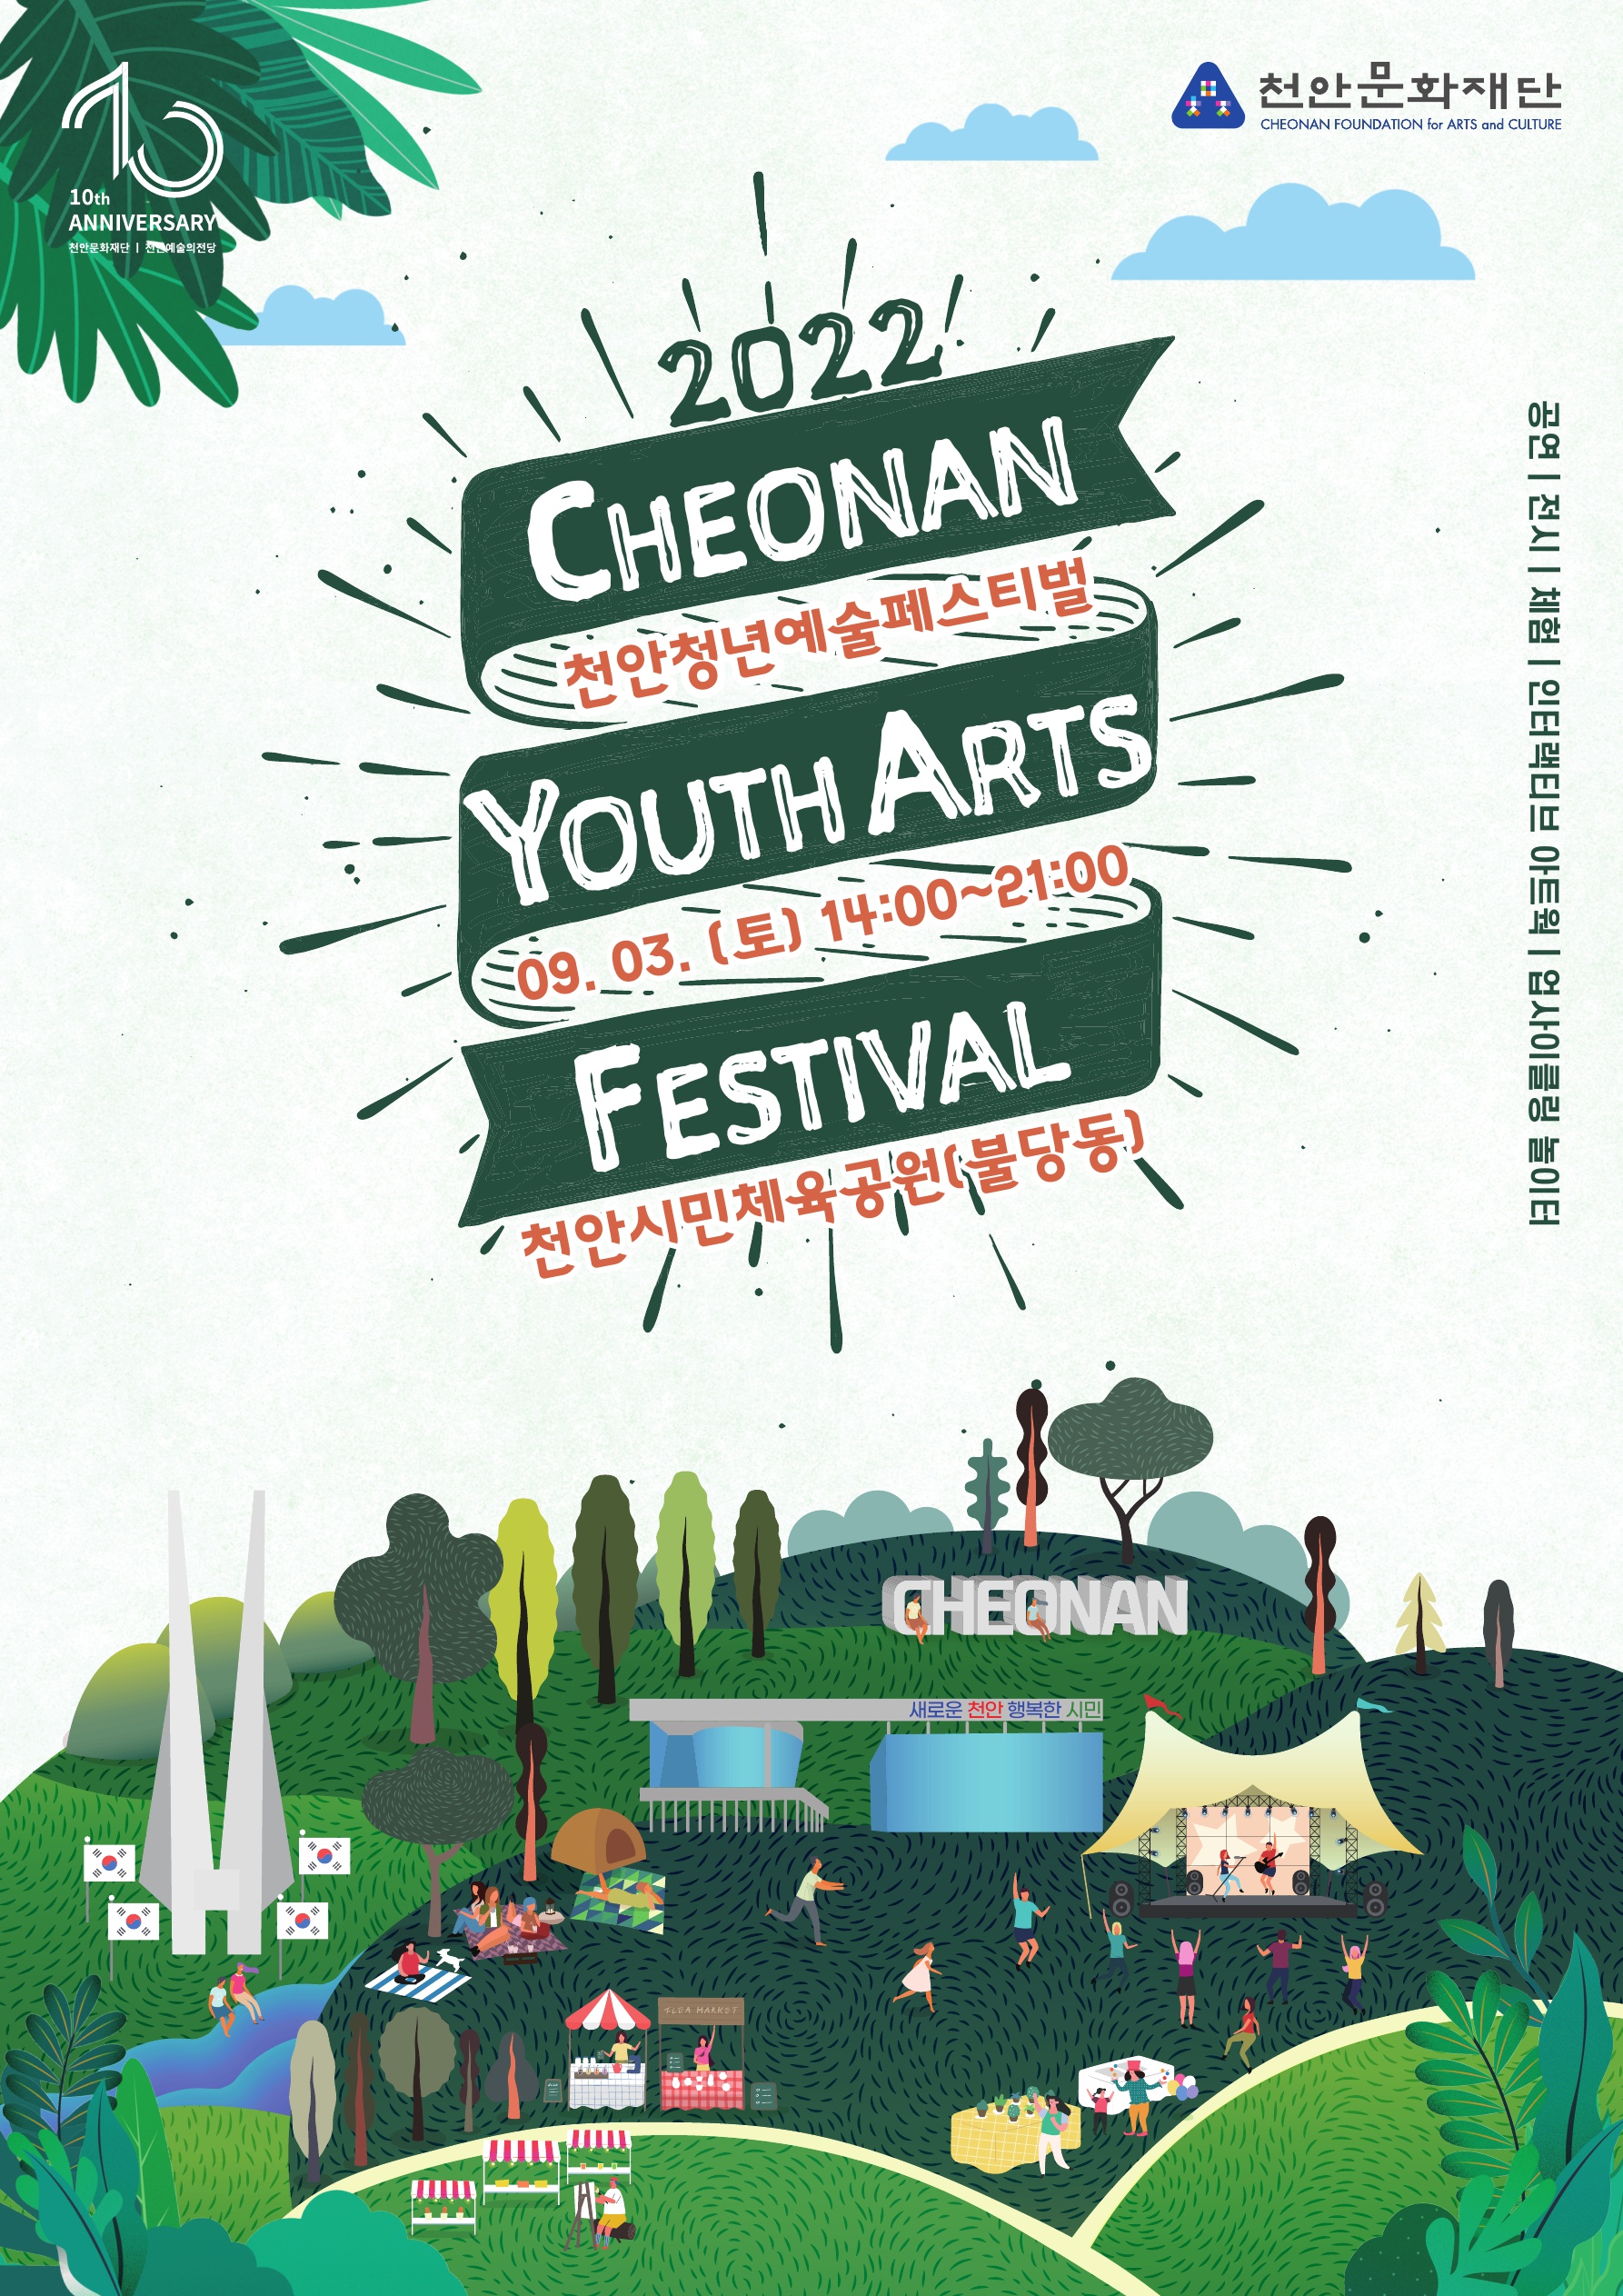 2022 천안청년예술페스티벌 09. 03. (토) 14:00 ~ 21:00 천안시민체육공원(불당동) / 2022  CHEONAN YOUTH ARTS FESTIVAL